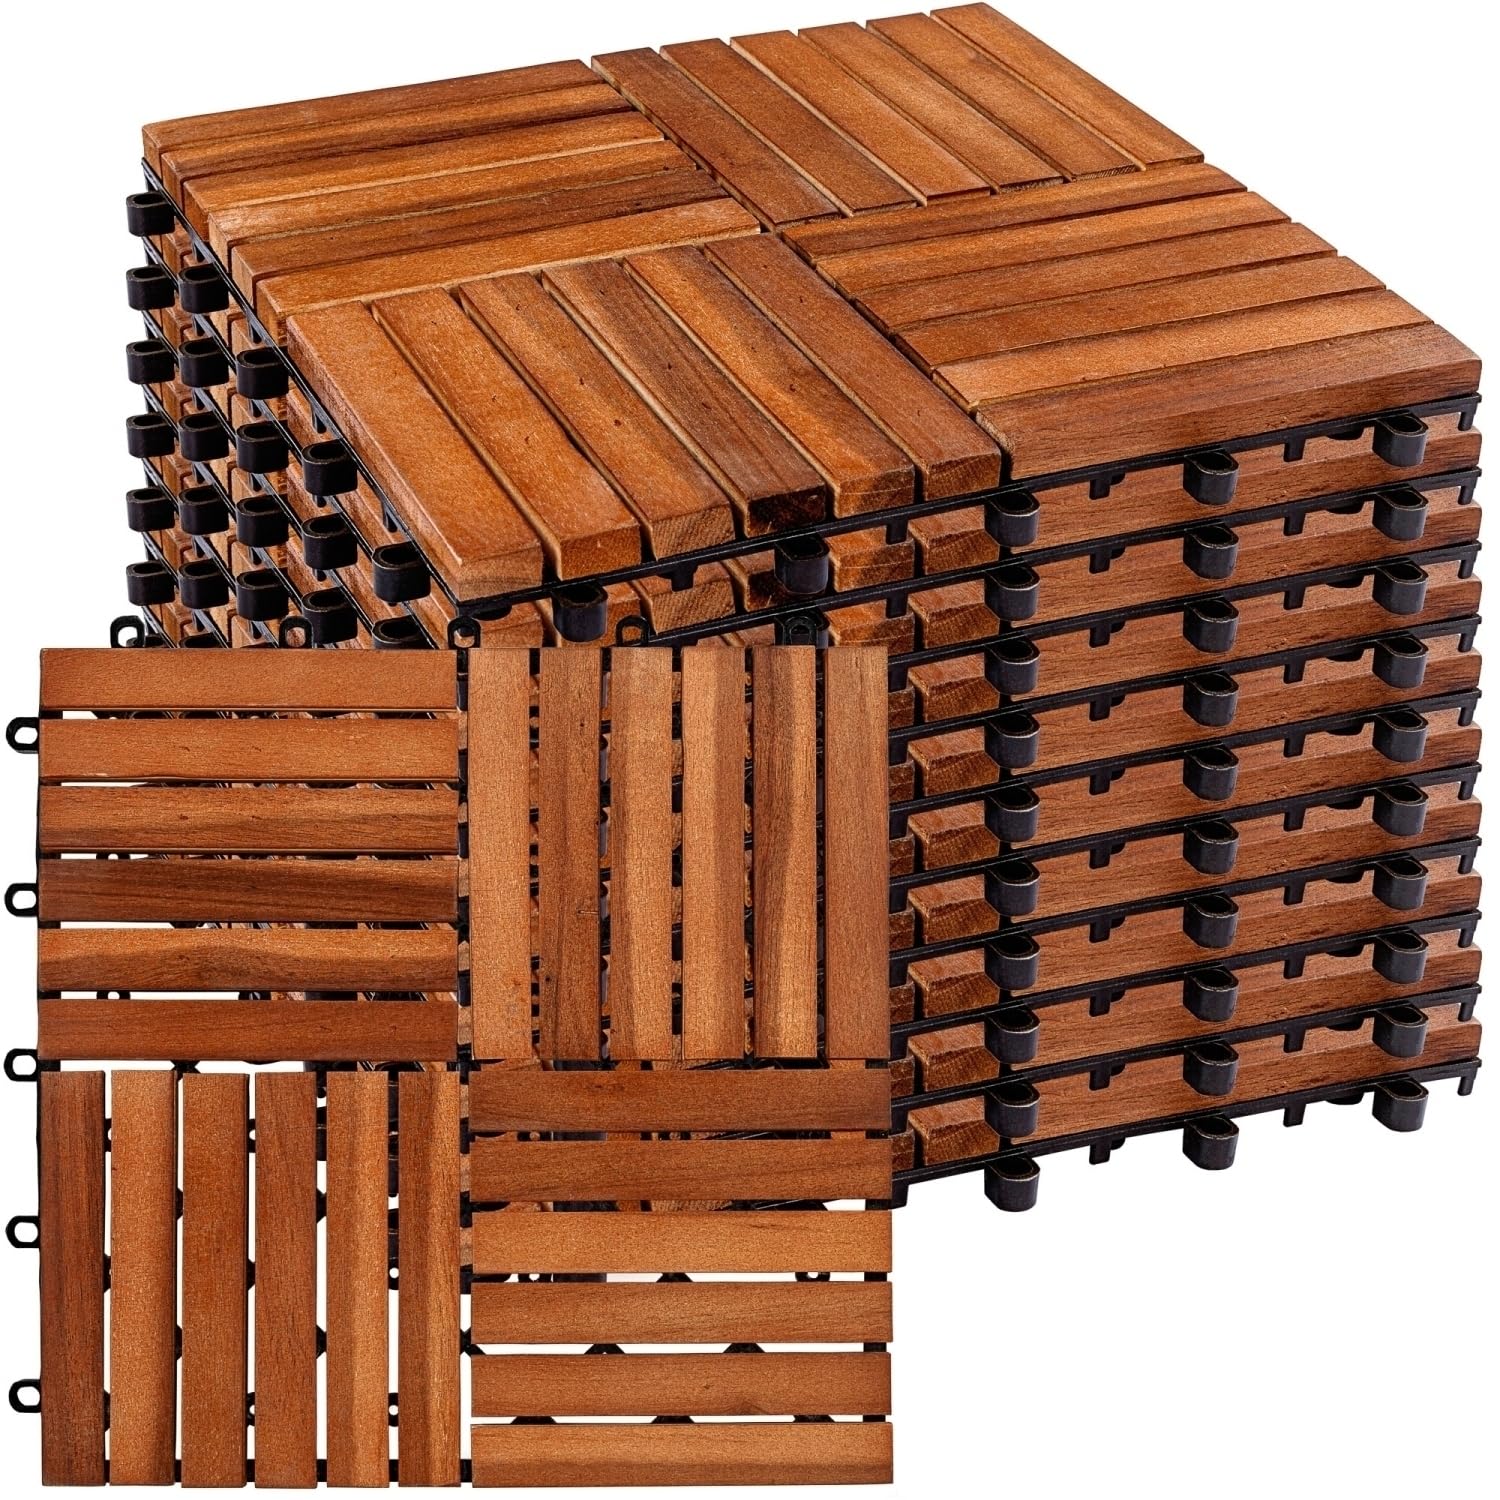 STILISTA® Holzfliesen, FSC®-zertifiziertes Akazienholz, 30 x 30 cm, 1 m² 2 m² 3 m² oder 5 m² - Auswahl 1 m² (11er Set)